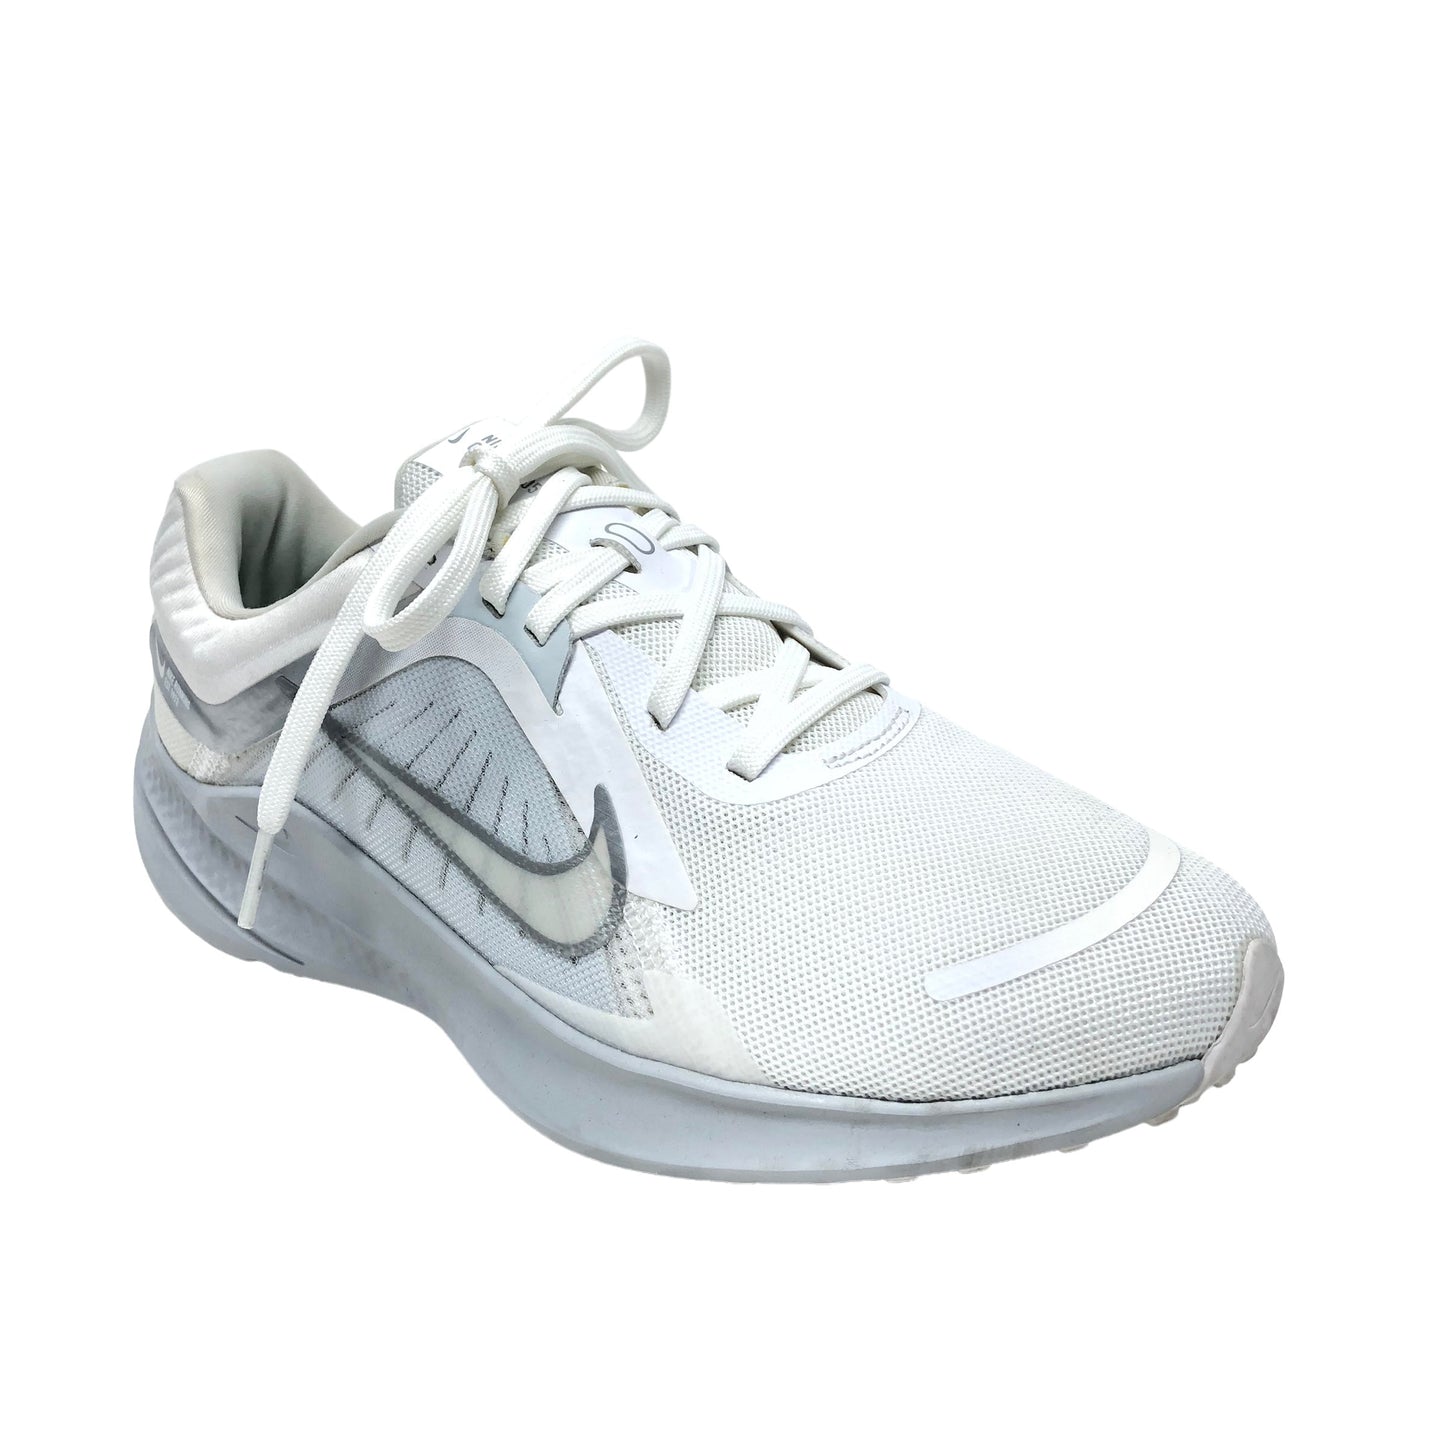 White Shoes Athletic Nike, Size 7